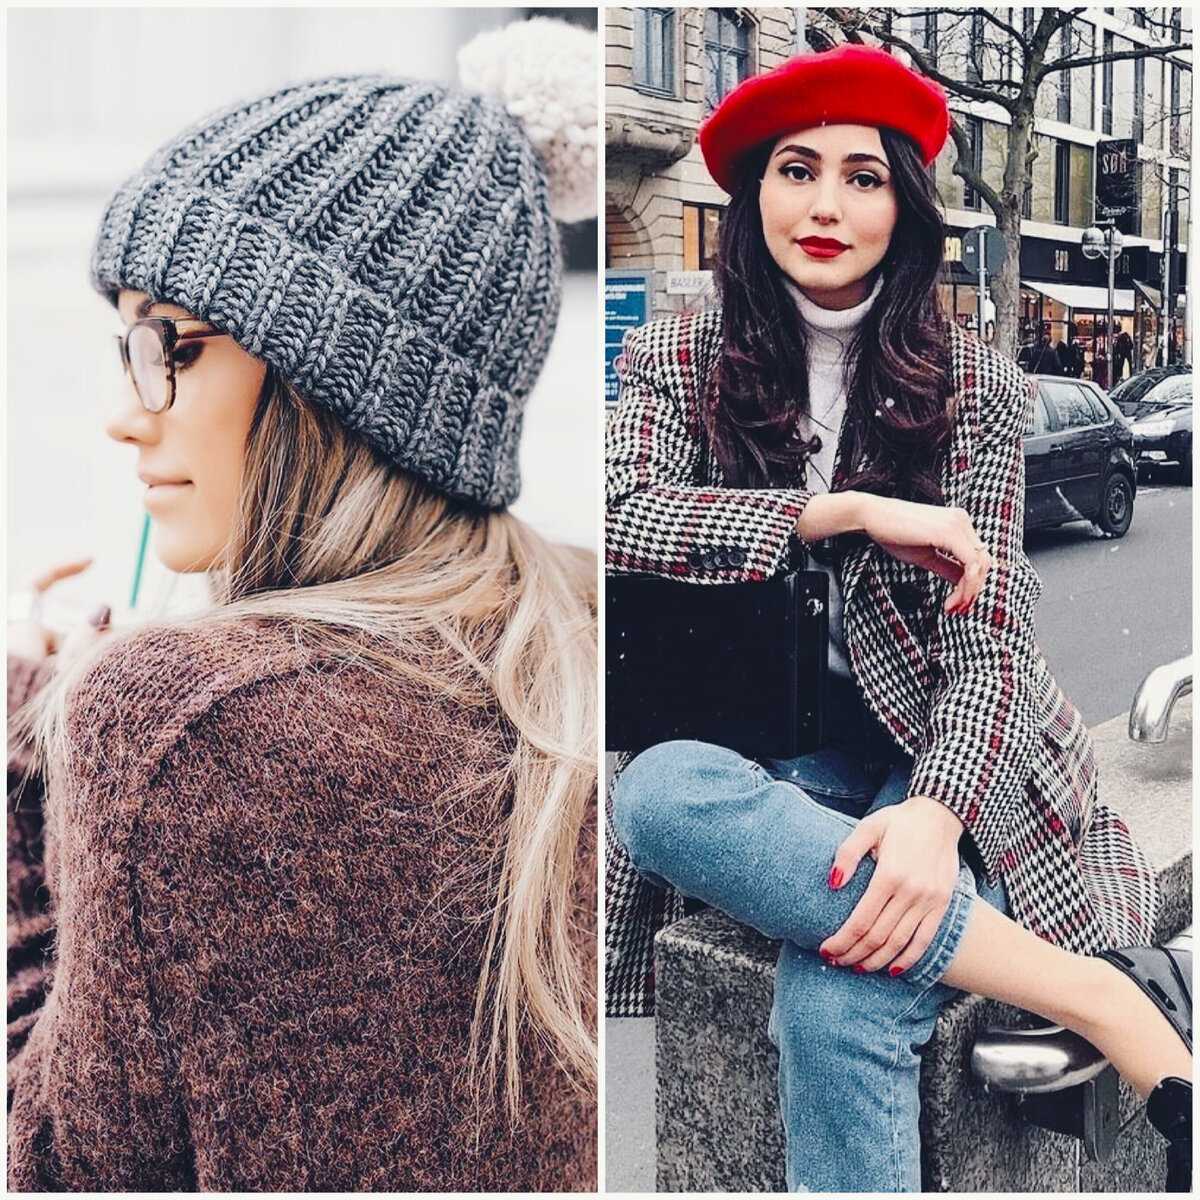 (100%) модные женские шапки и шляпы осень-зима 2021-2022: 120 фото тренды